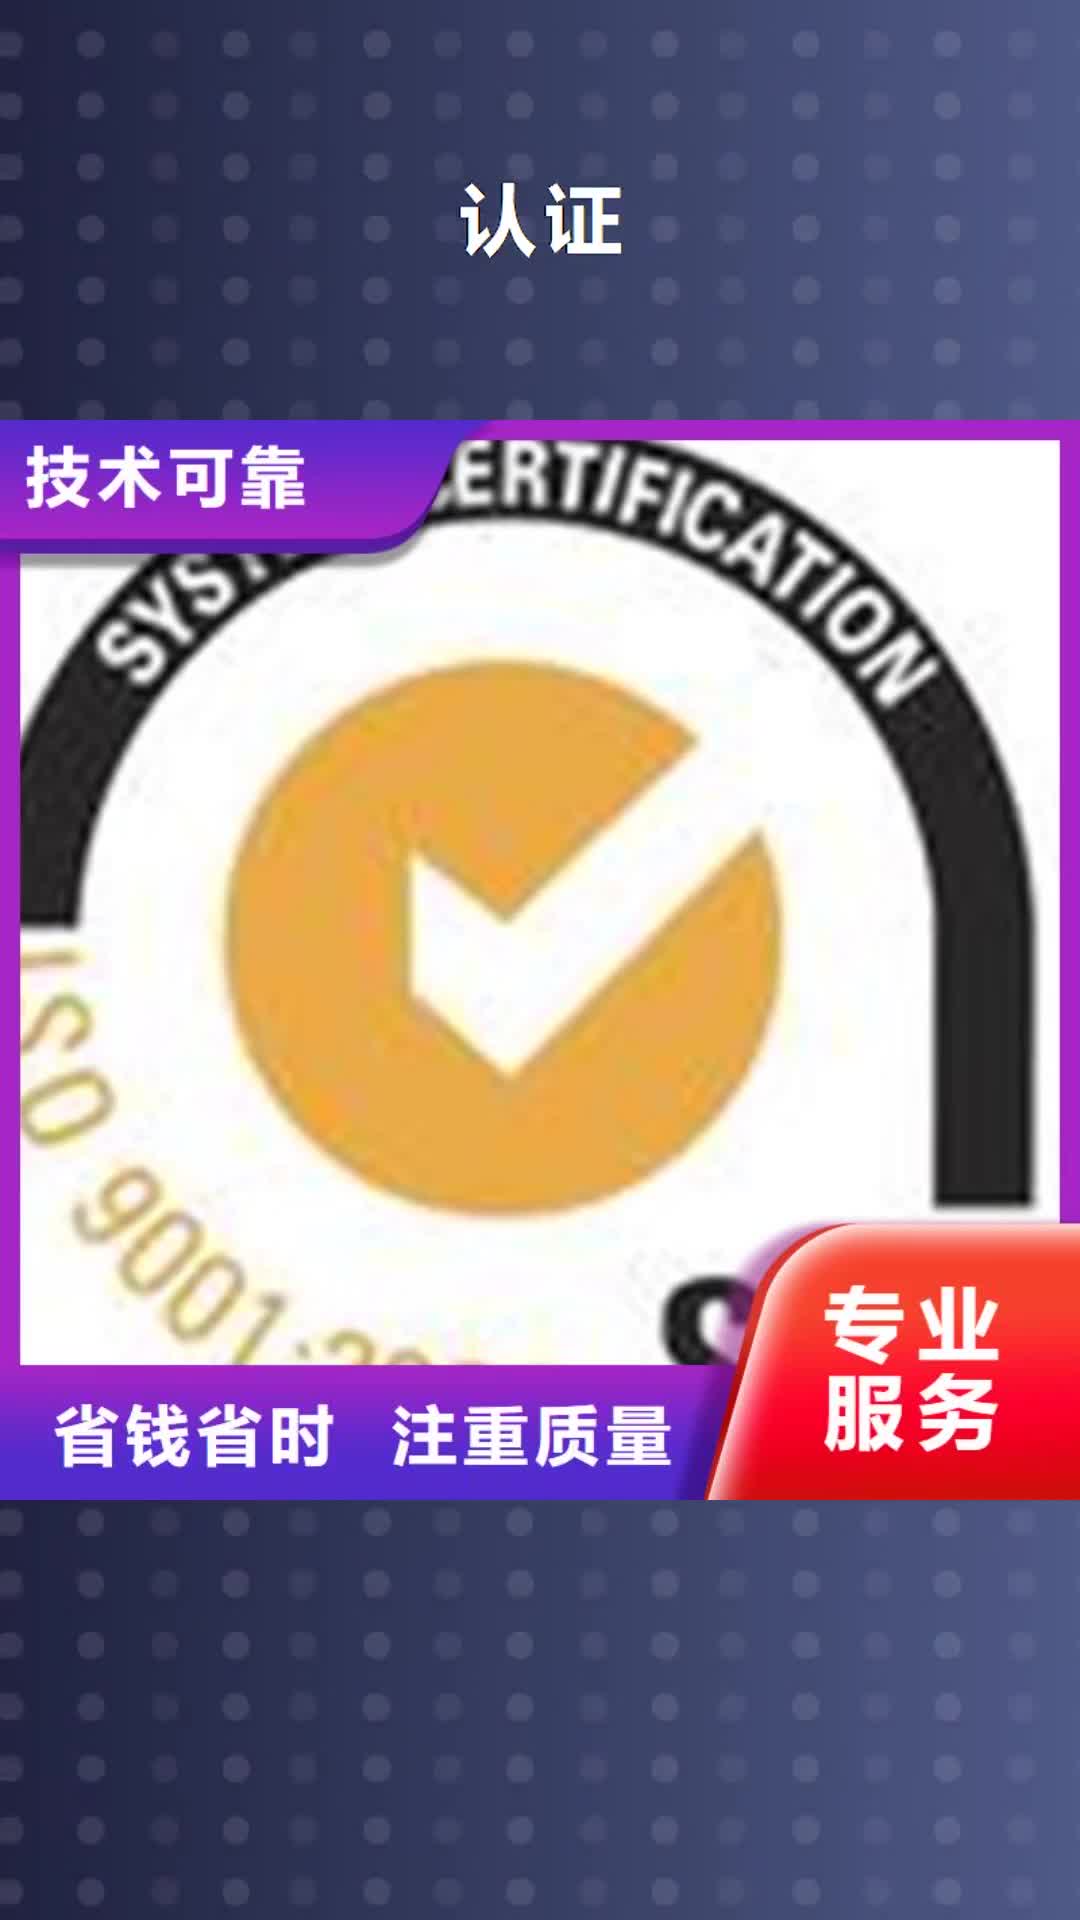 南平【认证】-ISO9000认证匠心品质